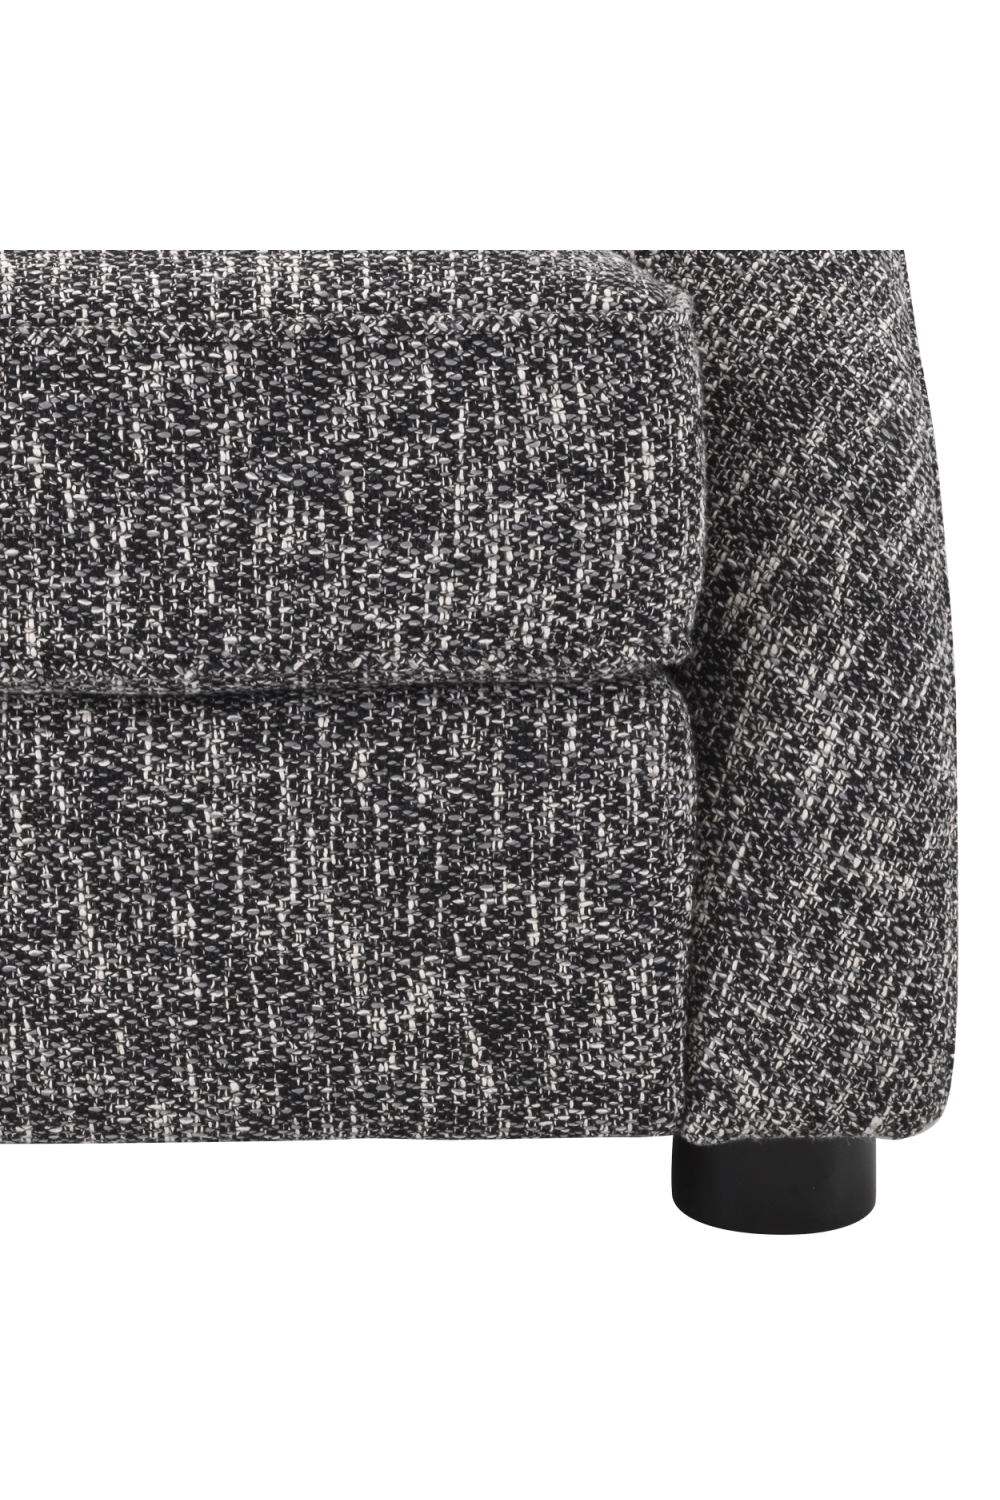 Sloped Arm Accent Chair | Eichholtz Cruz | Oroa.com